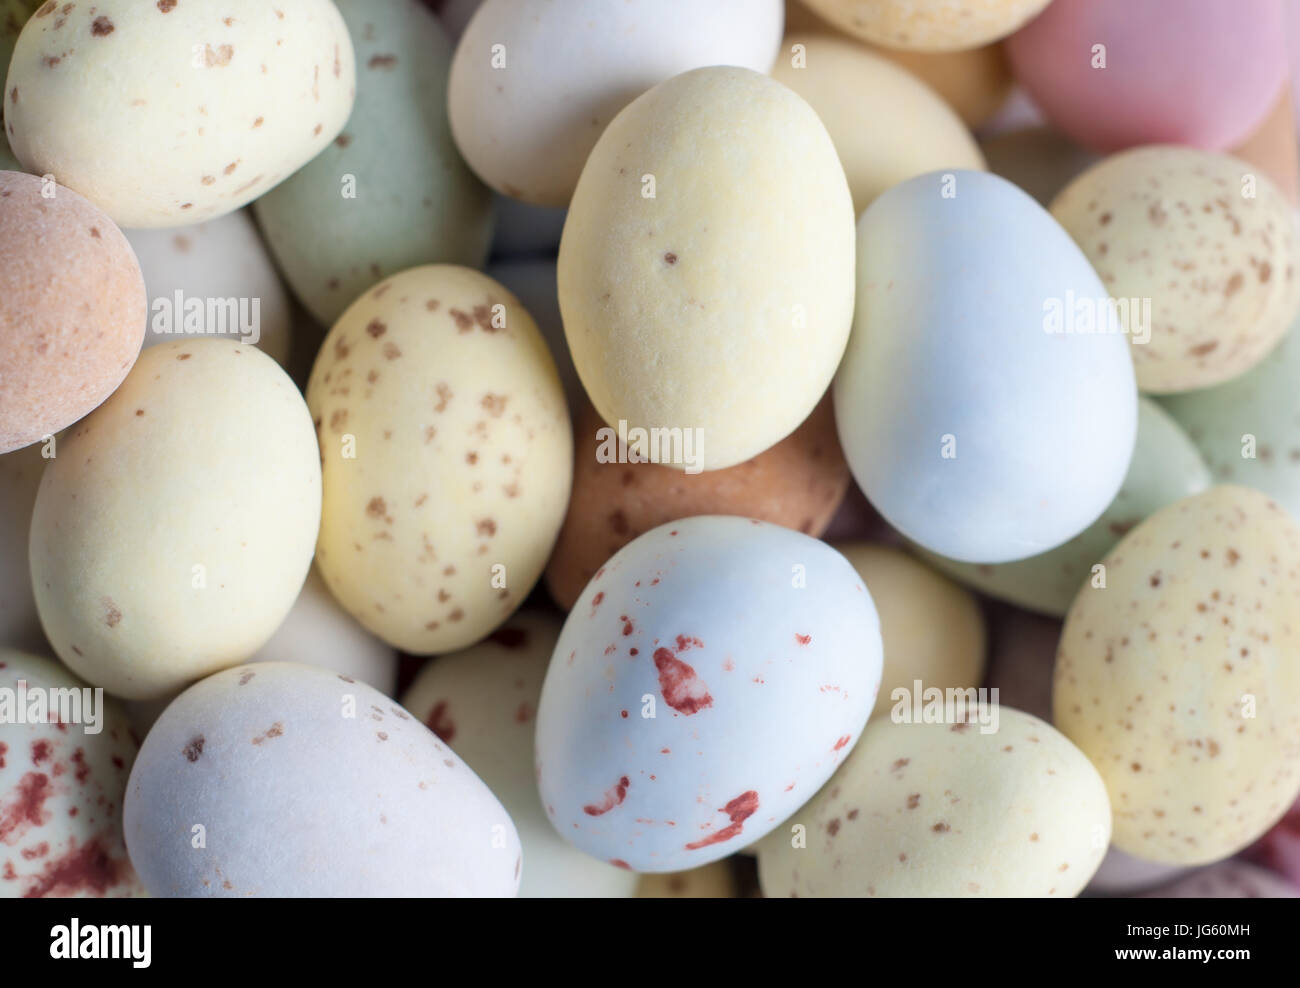 Tettuccio di close up (macro) di una pila di uovo di Pasqua a forma di caramelle (caramelle) in sfumature pastello. Foto Stock